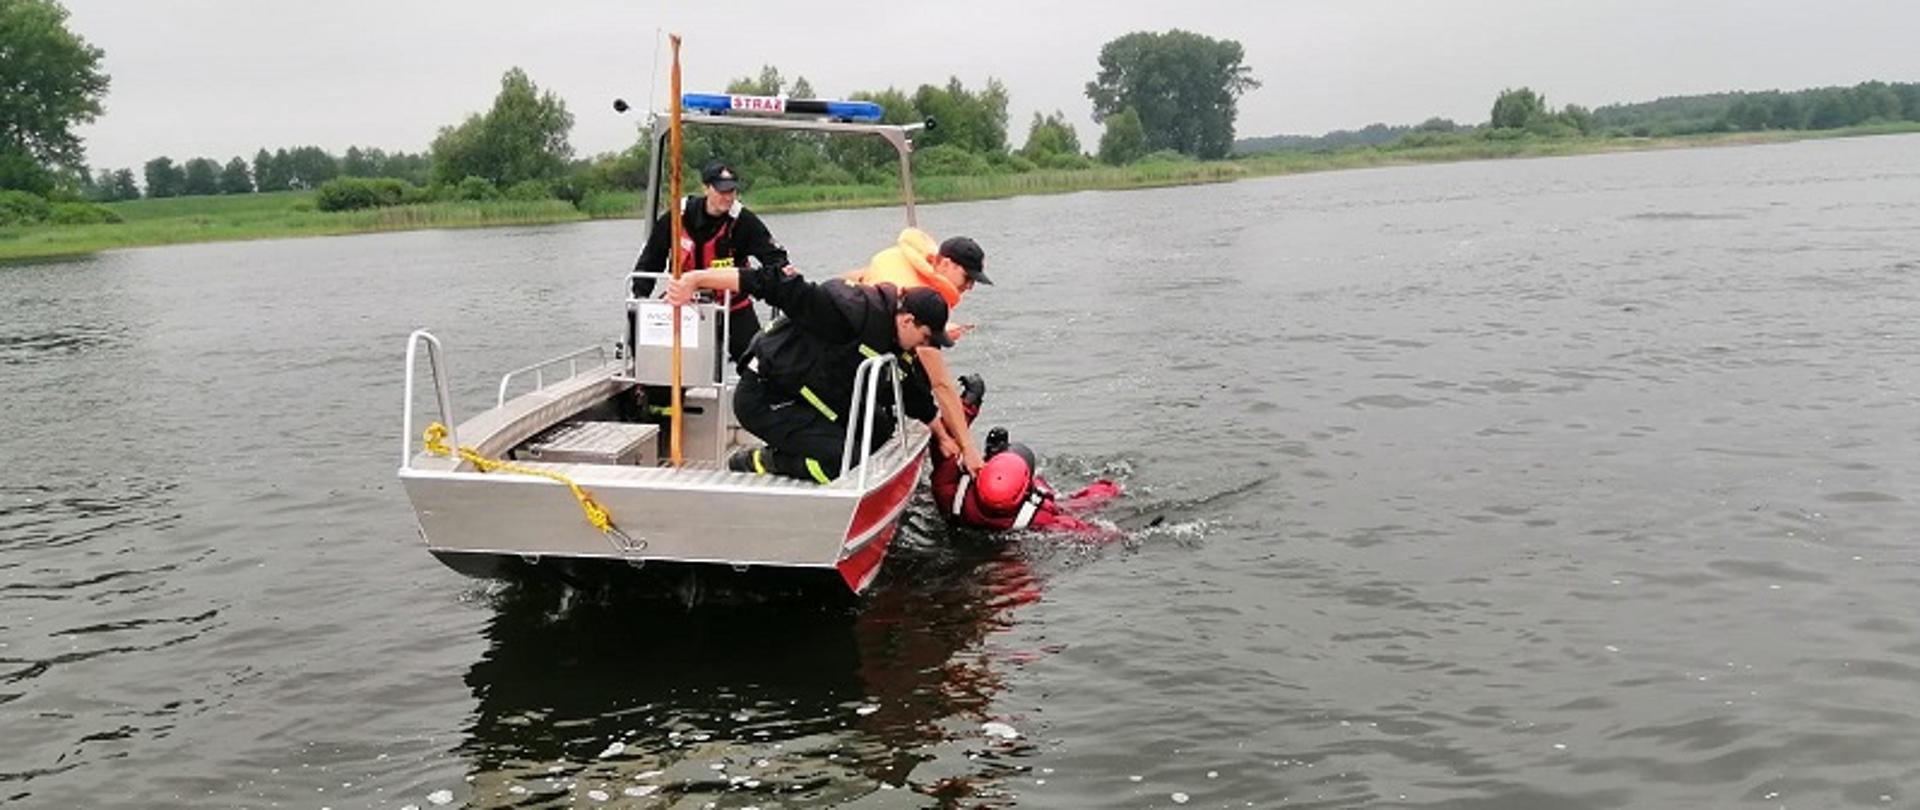 Zdjęcie przedstawia strażaków na łodzi ćwiczących podejmowanie pozoranta z wody na łódź ratowniczą.